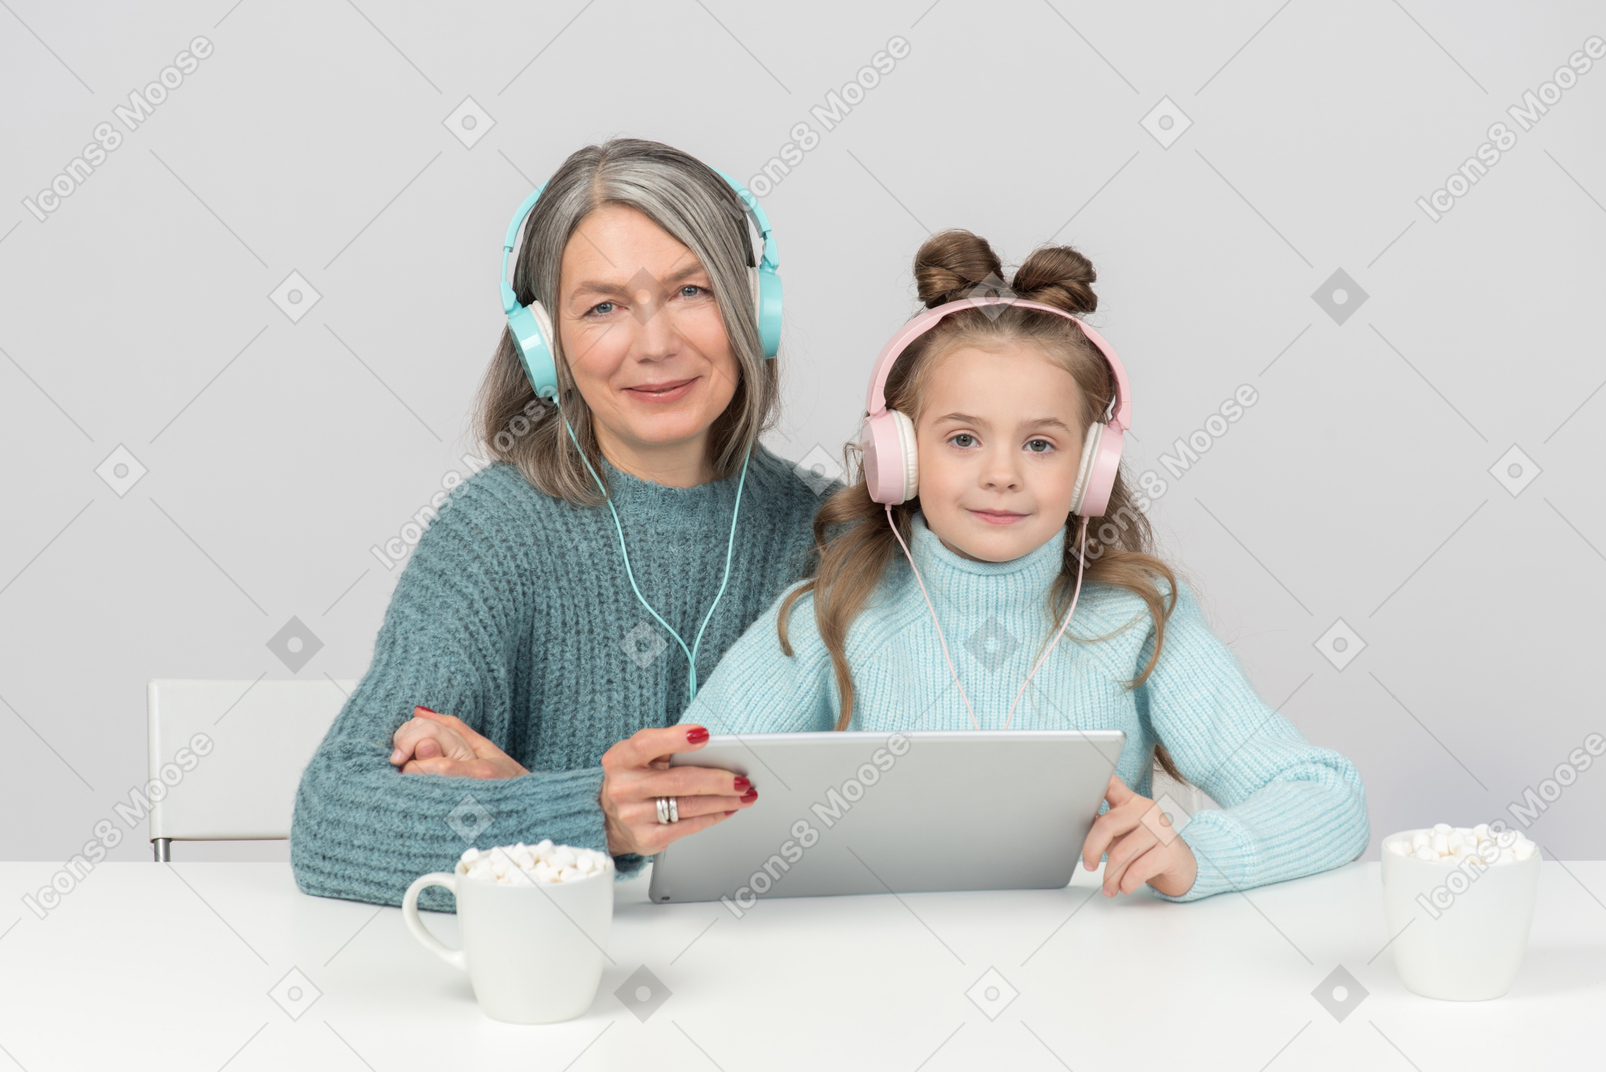 Grandmother and granddaughter using digital tablet together